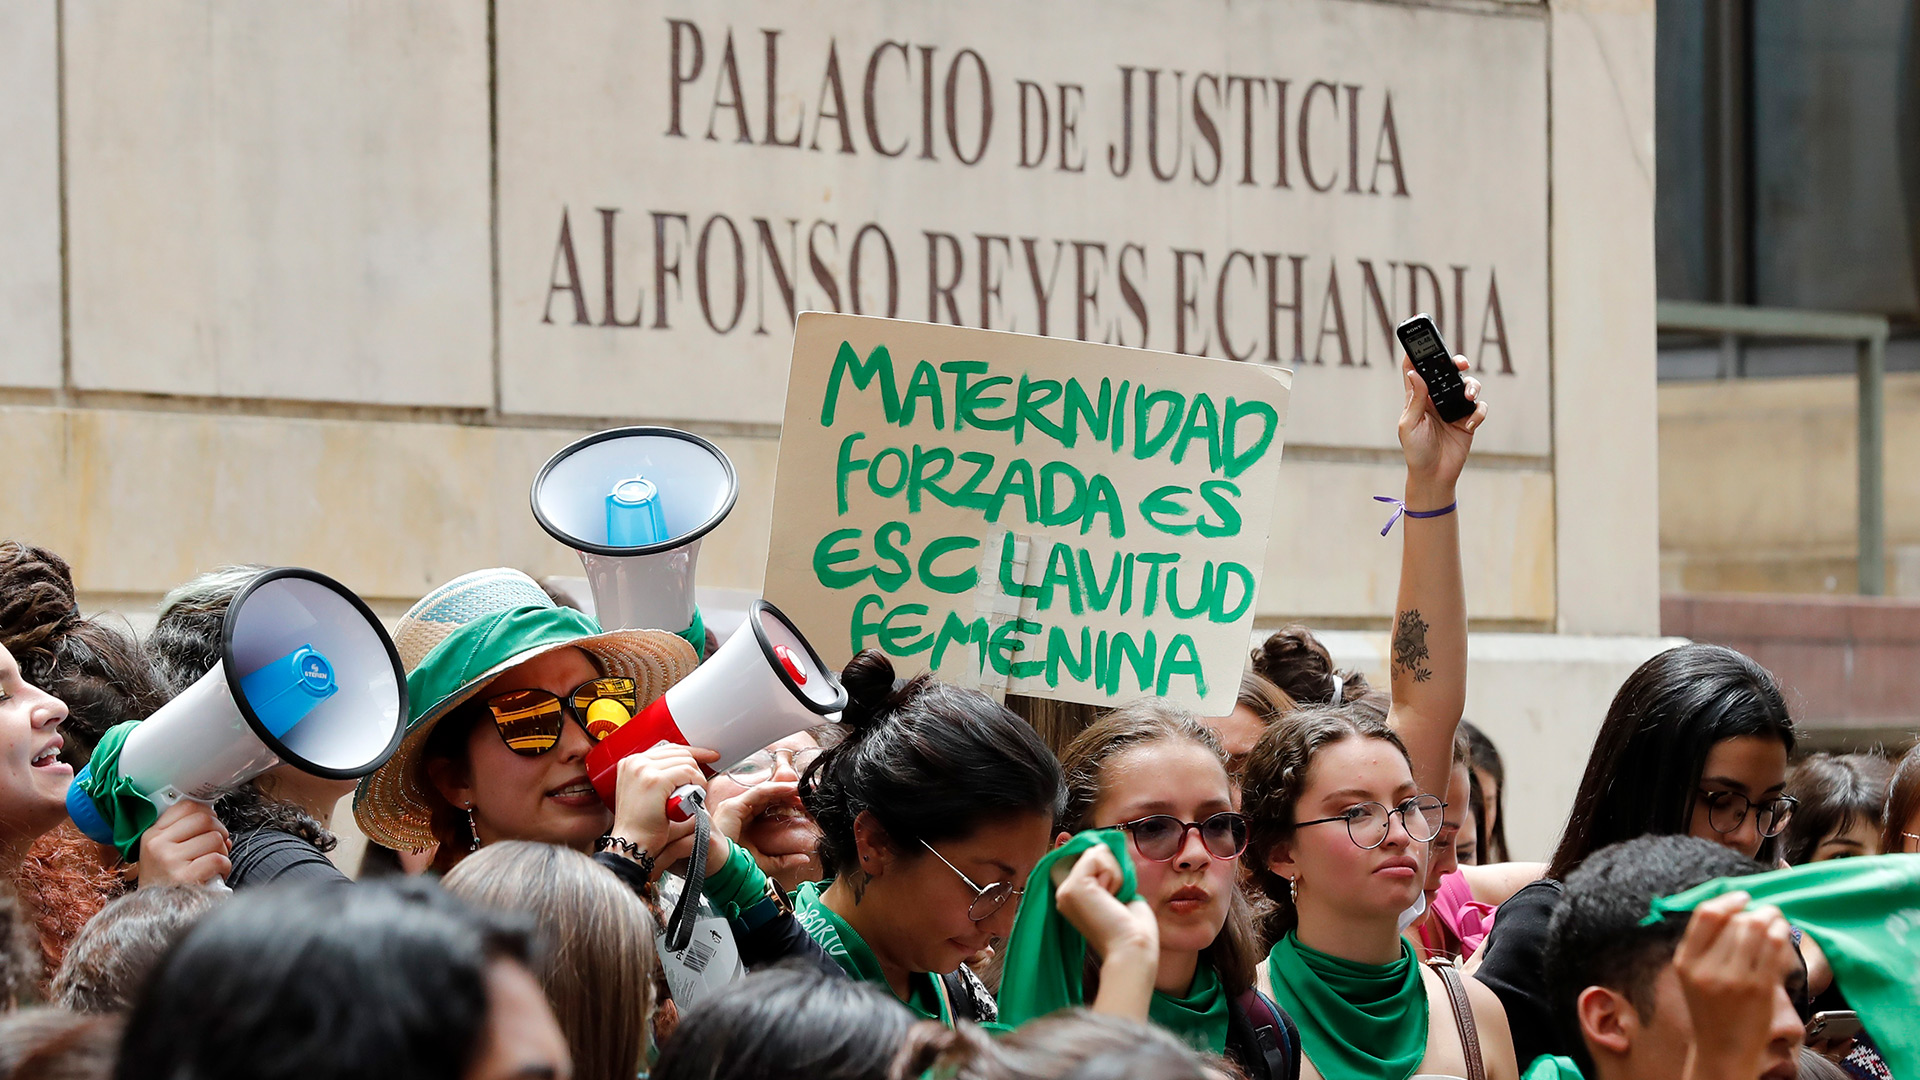 AME116. BOGOTÁ (COLOMBIA), 02/03/2020.- Personas en favor del aborto legal se manifiestan este lunes frente a la Corte Constitucional, que discute su despenalización total en Bogotá (Colombia). EFE/Mauricio Dueñas Castañeda